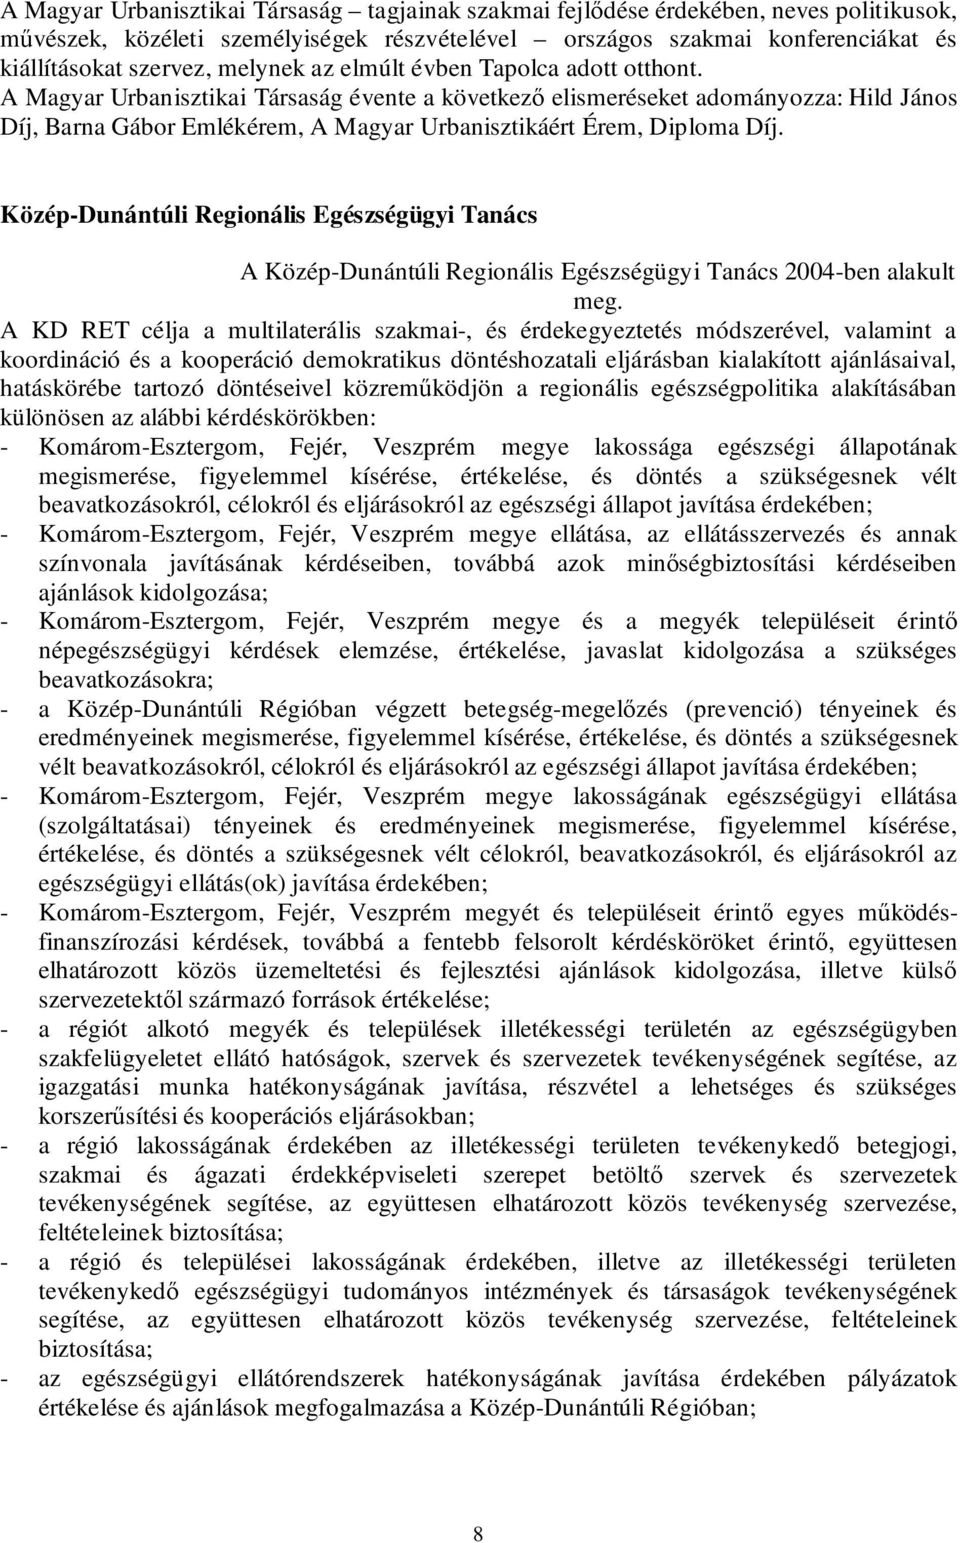 A Magyar Urbanisztikai Társaság évente a következő elismeréseket adományozza: Hild János Díj, Barna Gábor Emlékérem, A Magyar Urbanisztikáért Érem, Diploma Díj.